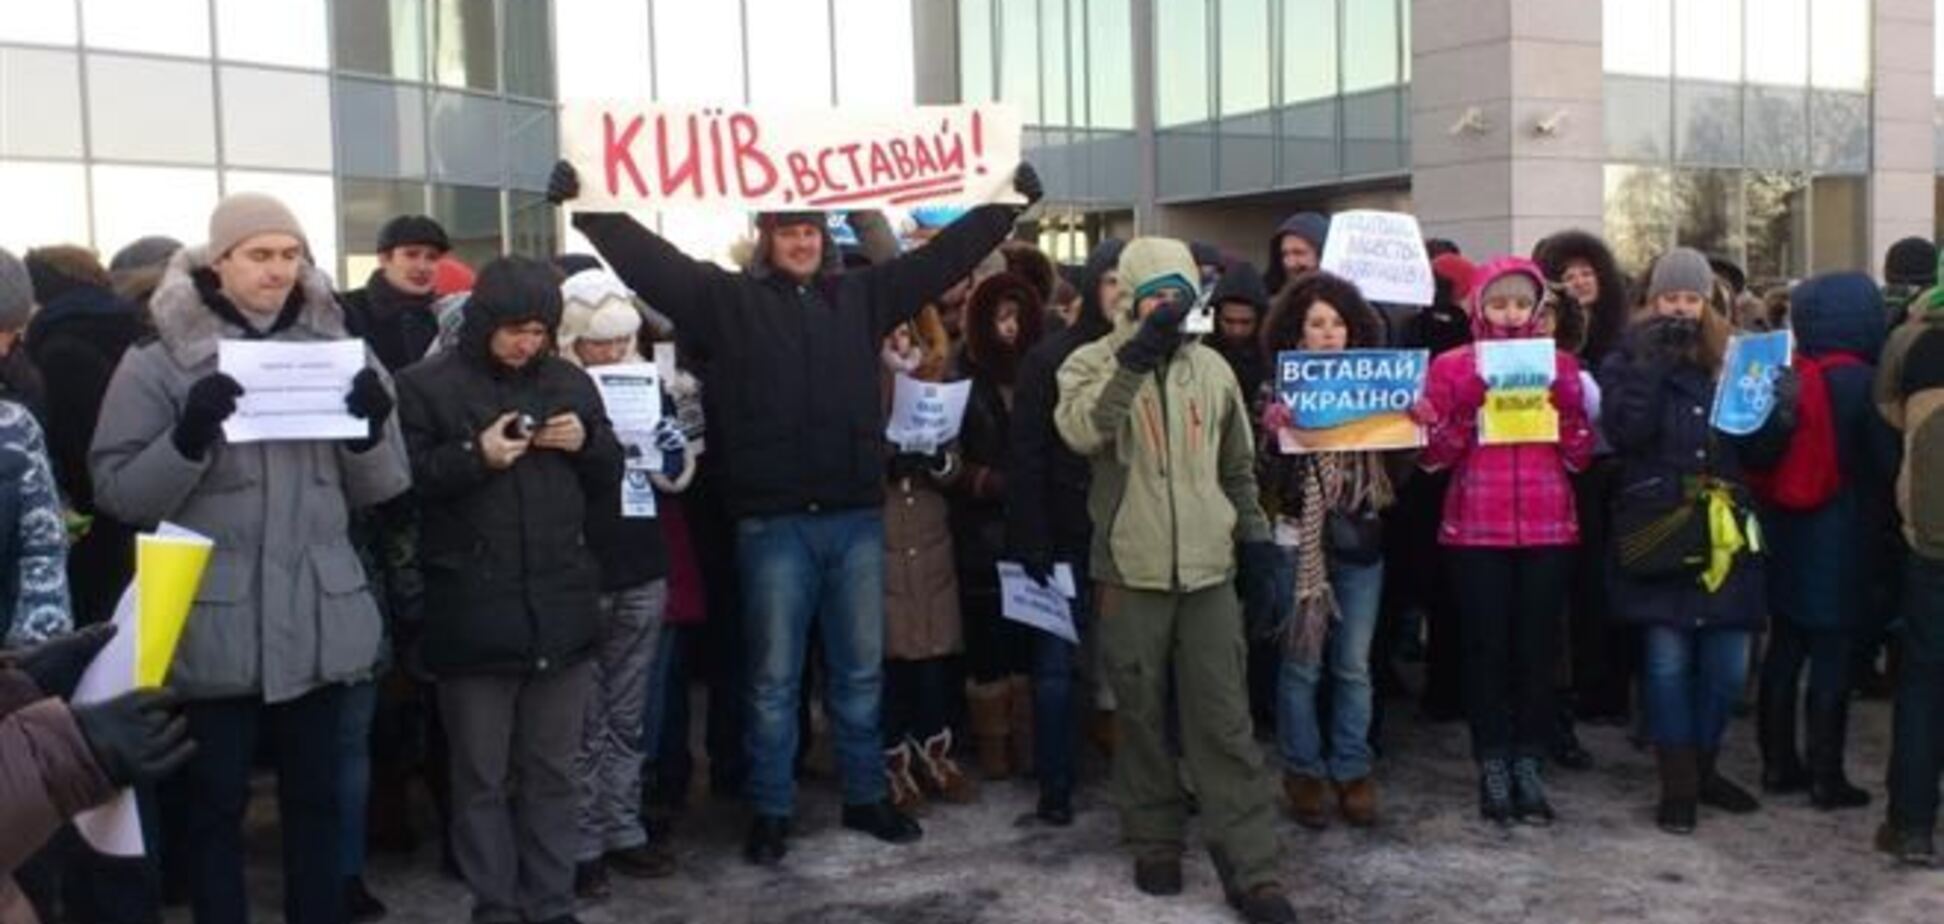 500 офисных работников ходили по Киеву и призывали коллег вставать